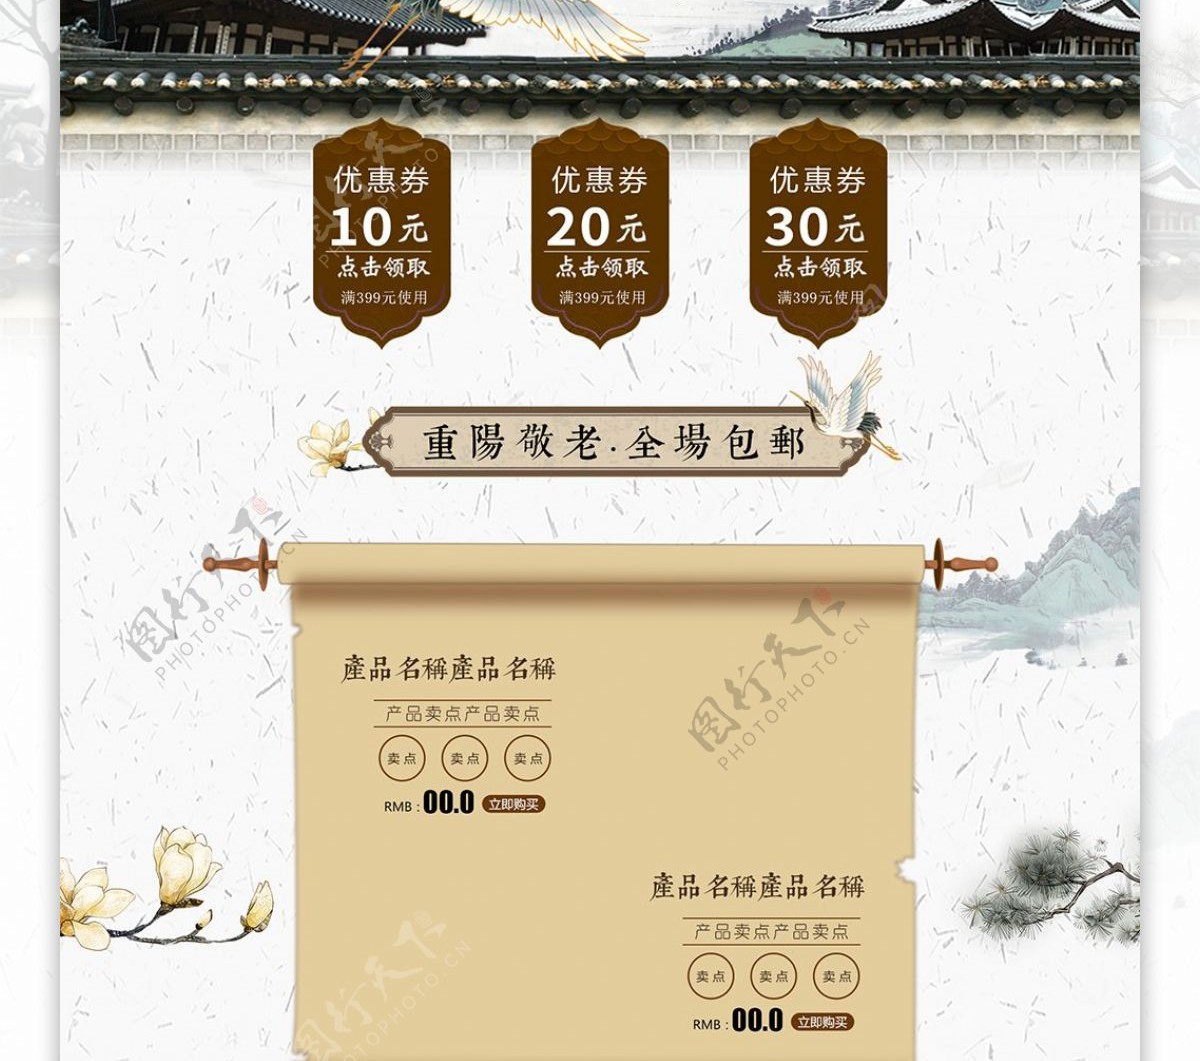 唯美古风中国风重阳节首页模板